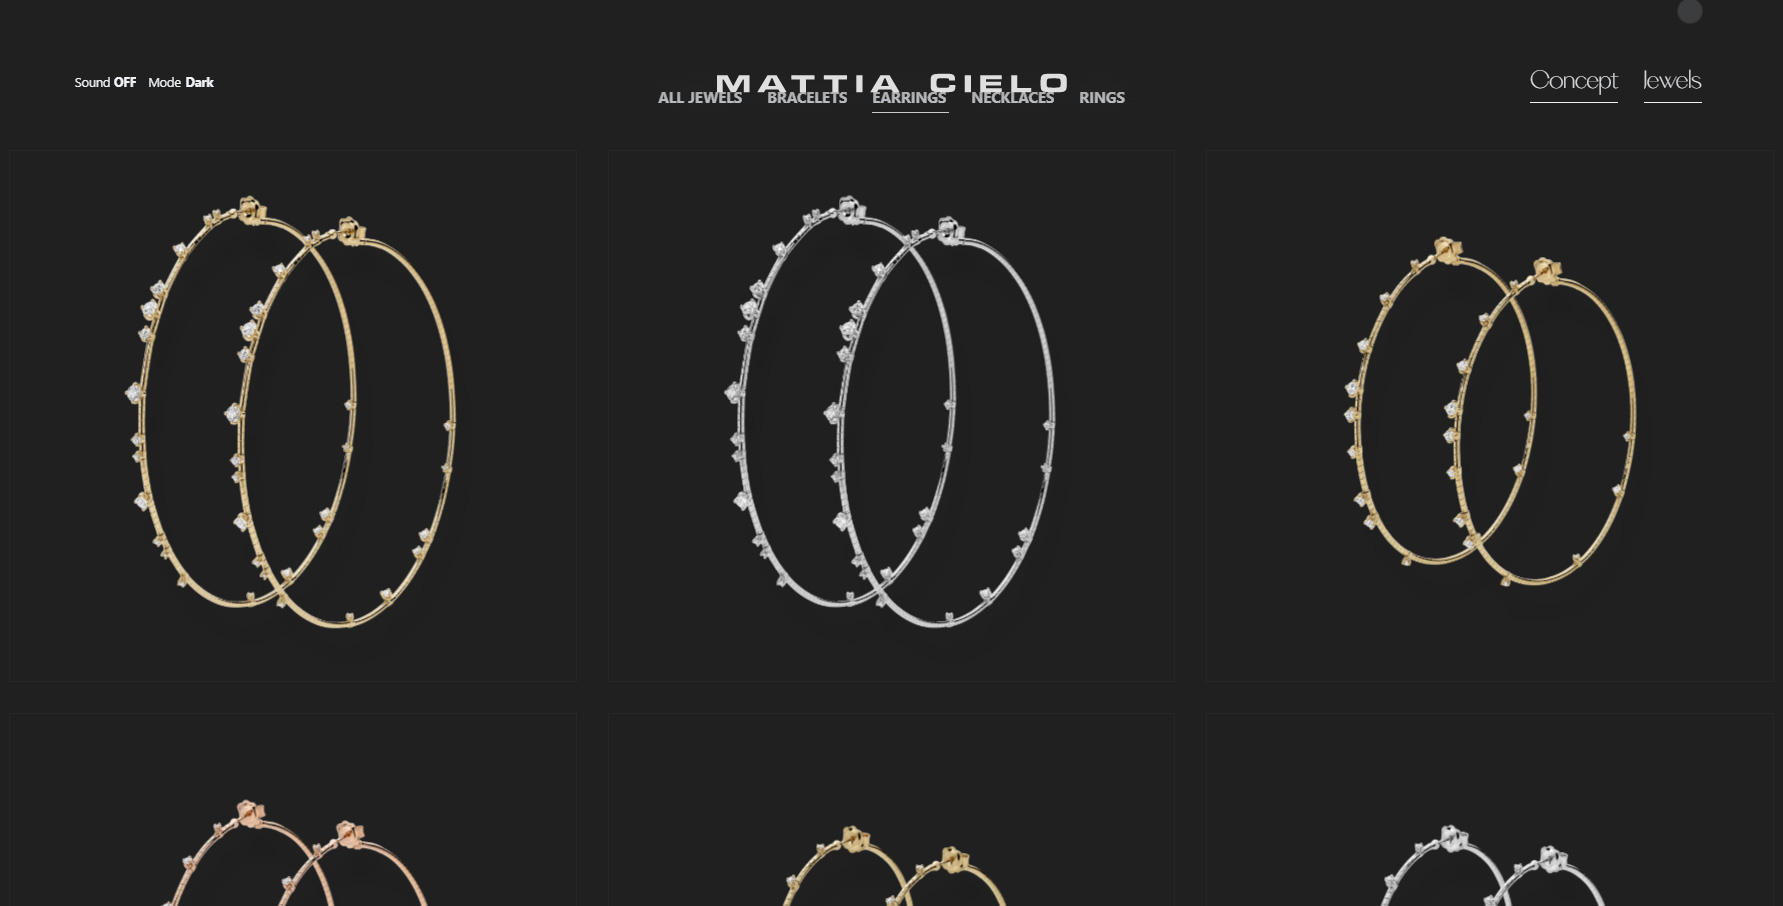 Mattia Cielo - Website of the Day